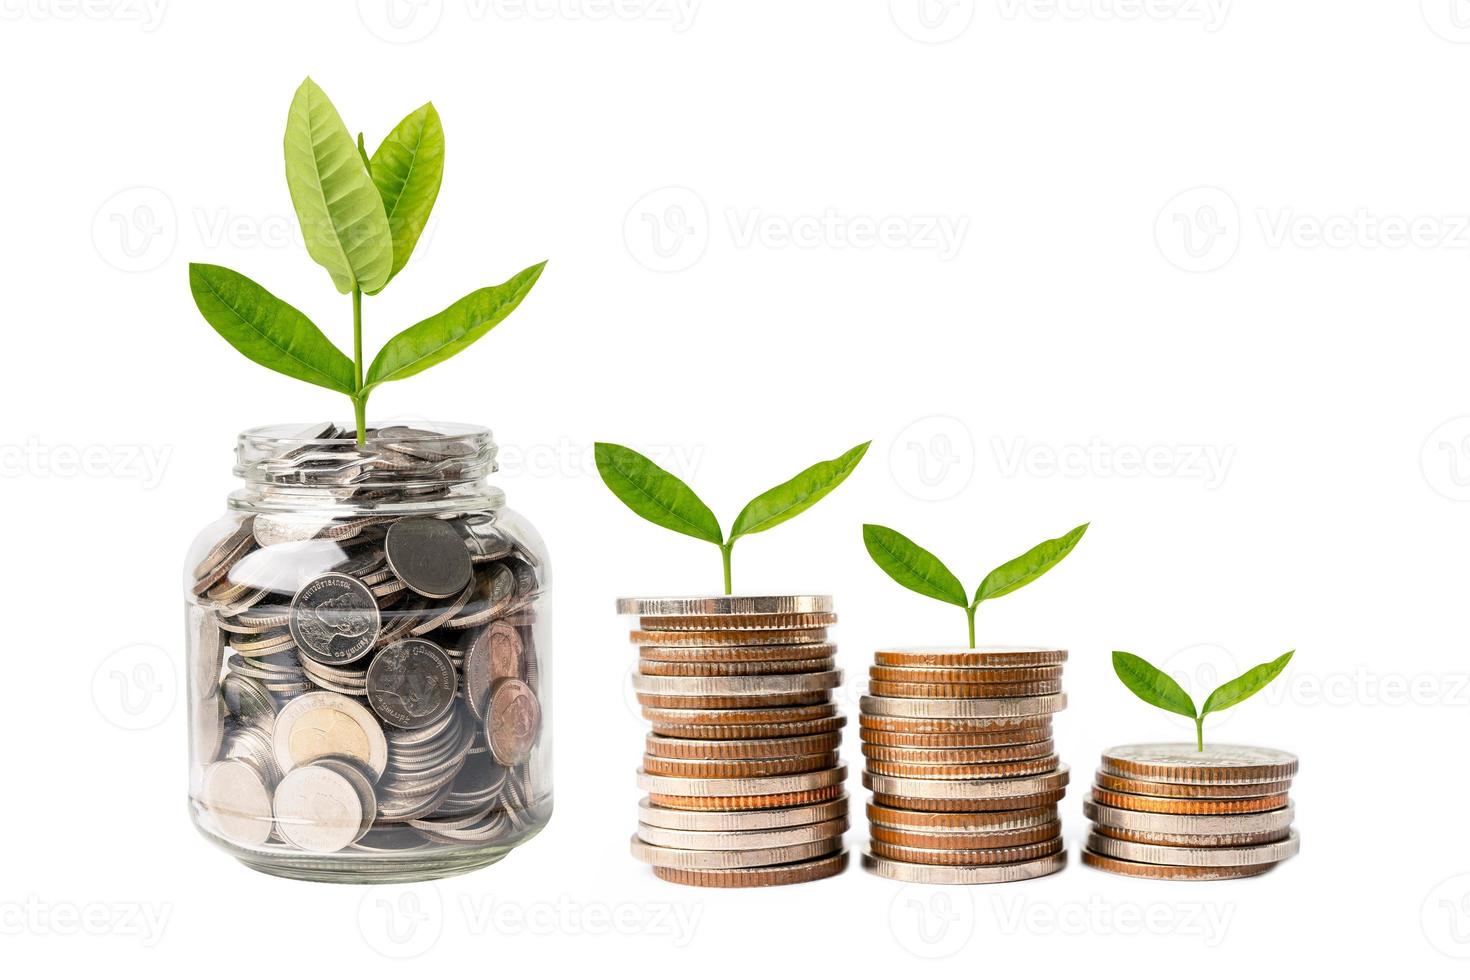 feuille d'arbre sur les pièces d'argent économisées, concept d'investissement bancaire d'économie de financement des entreprises. photo